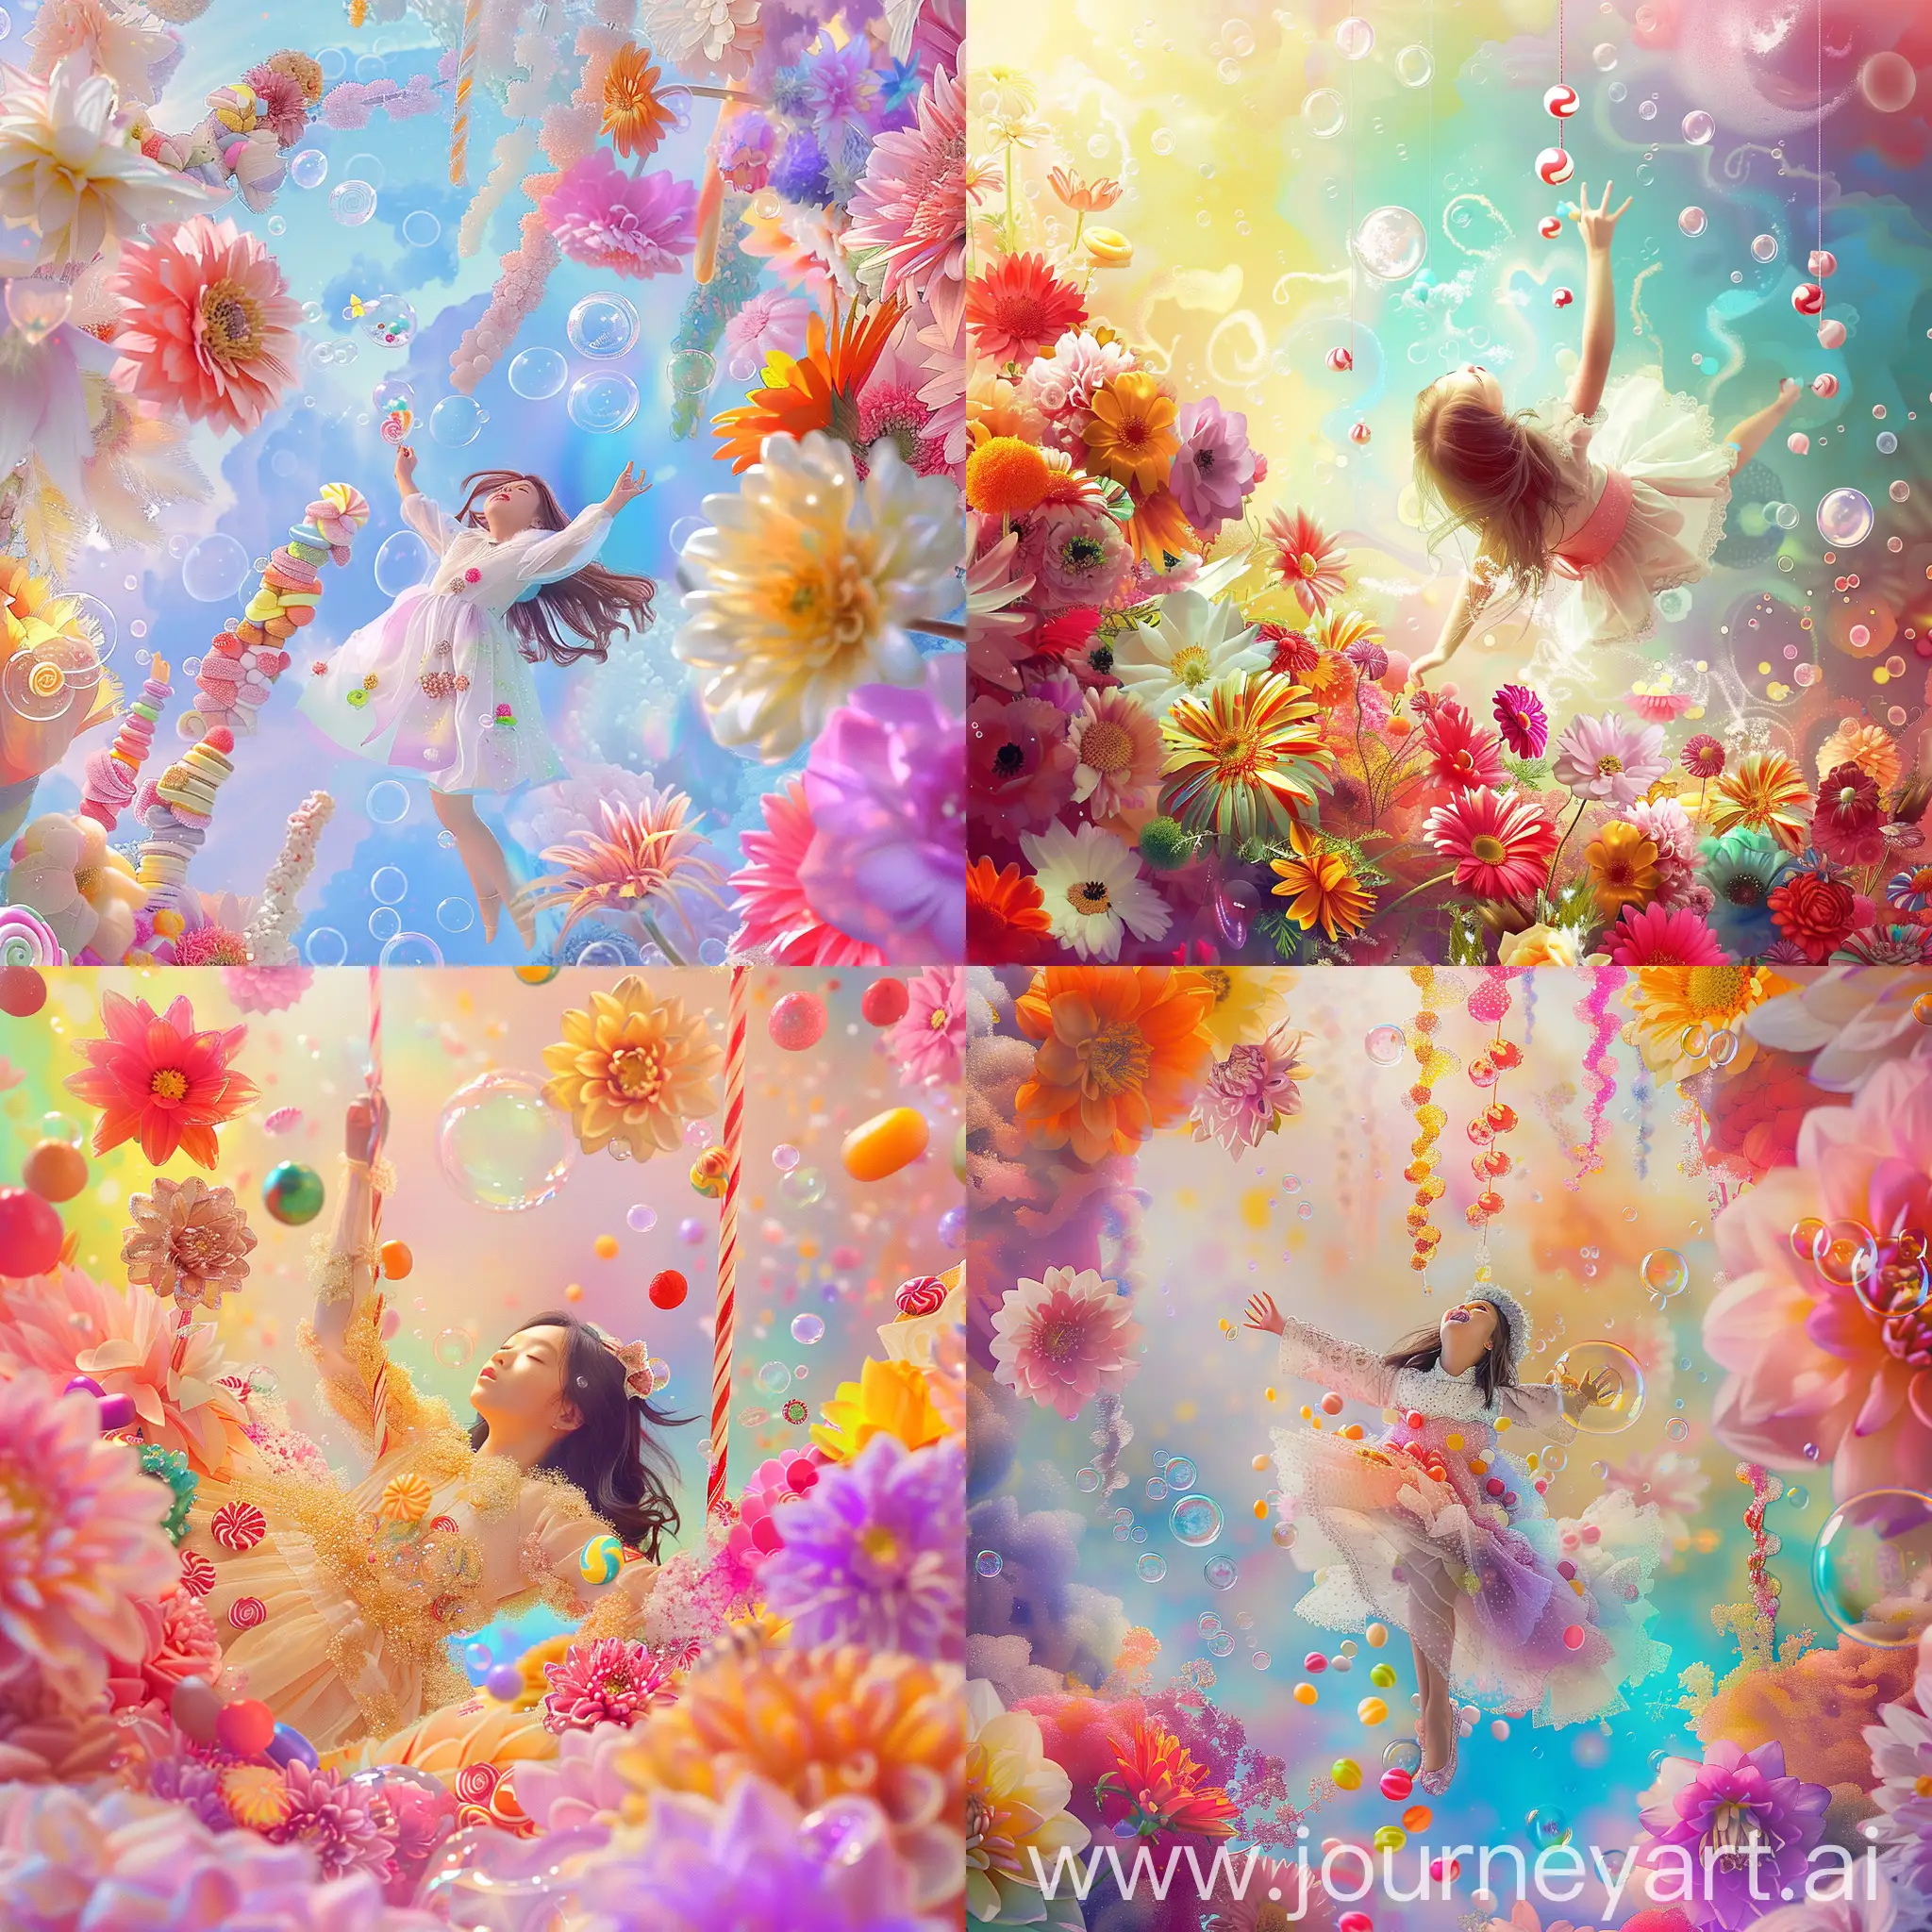 Princess-Descending-into-Colorful-Floral-Wonderland